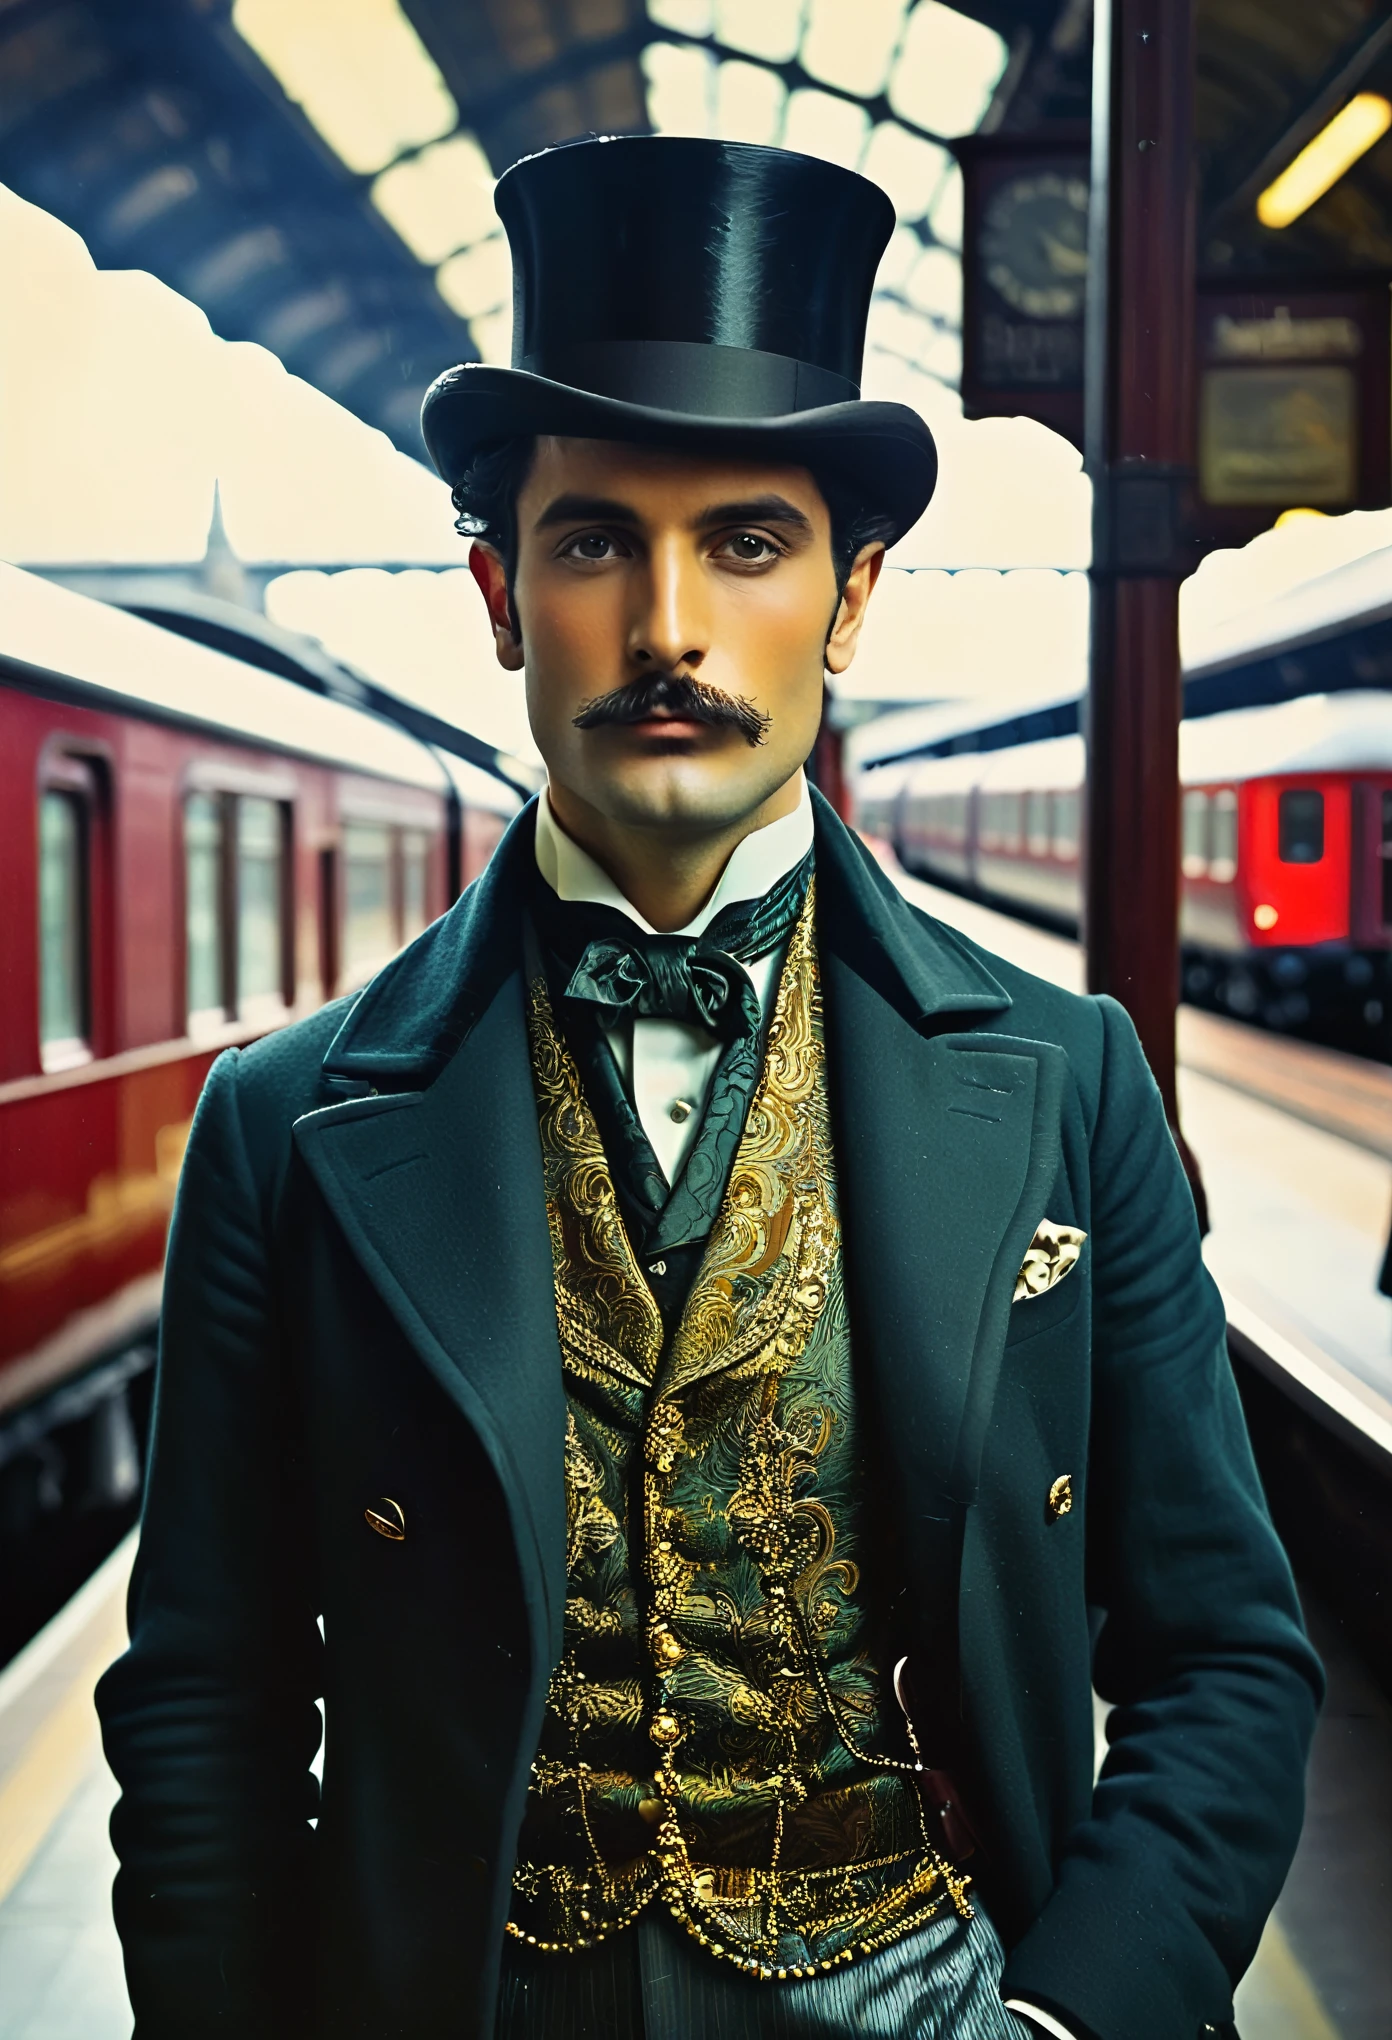 ((retrato de hombre)), ( Estilo de moda victoriana),(( foto en color)), ( Londres), ((estación de tren)), estilo británico, Nobleman, eleganteismo,escena de opulencia --c 22 --ar 27:40 --s 999 --v 6.0